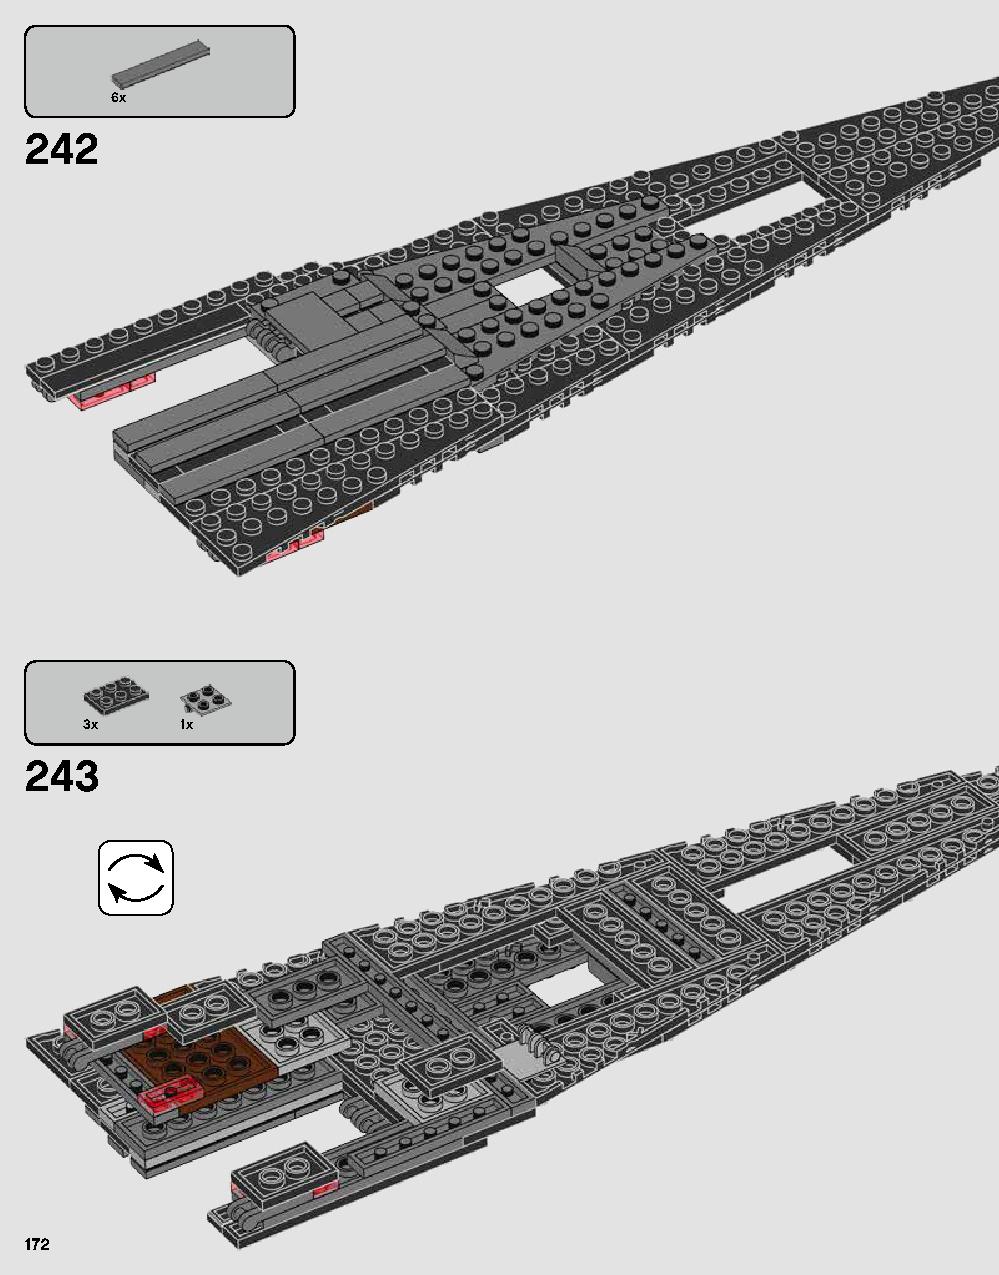 ダース・ベイダーの城 75251 レゴの商品情報 レゴの説明書・組立方法 172 page